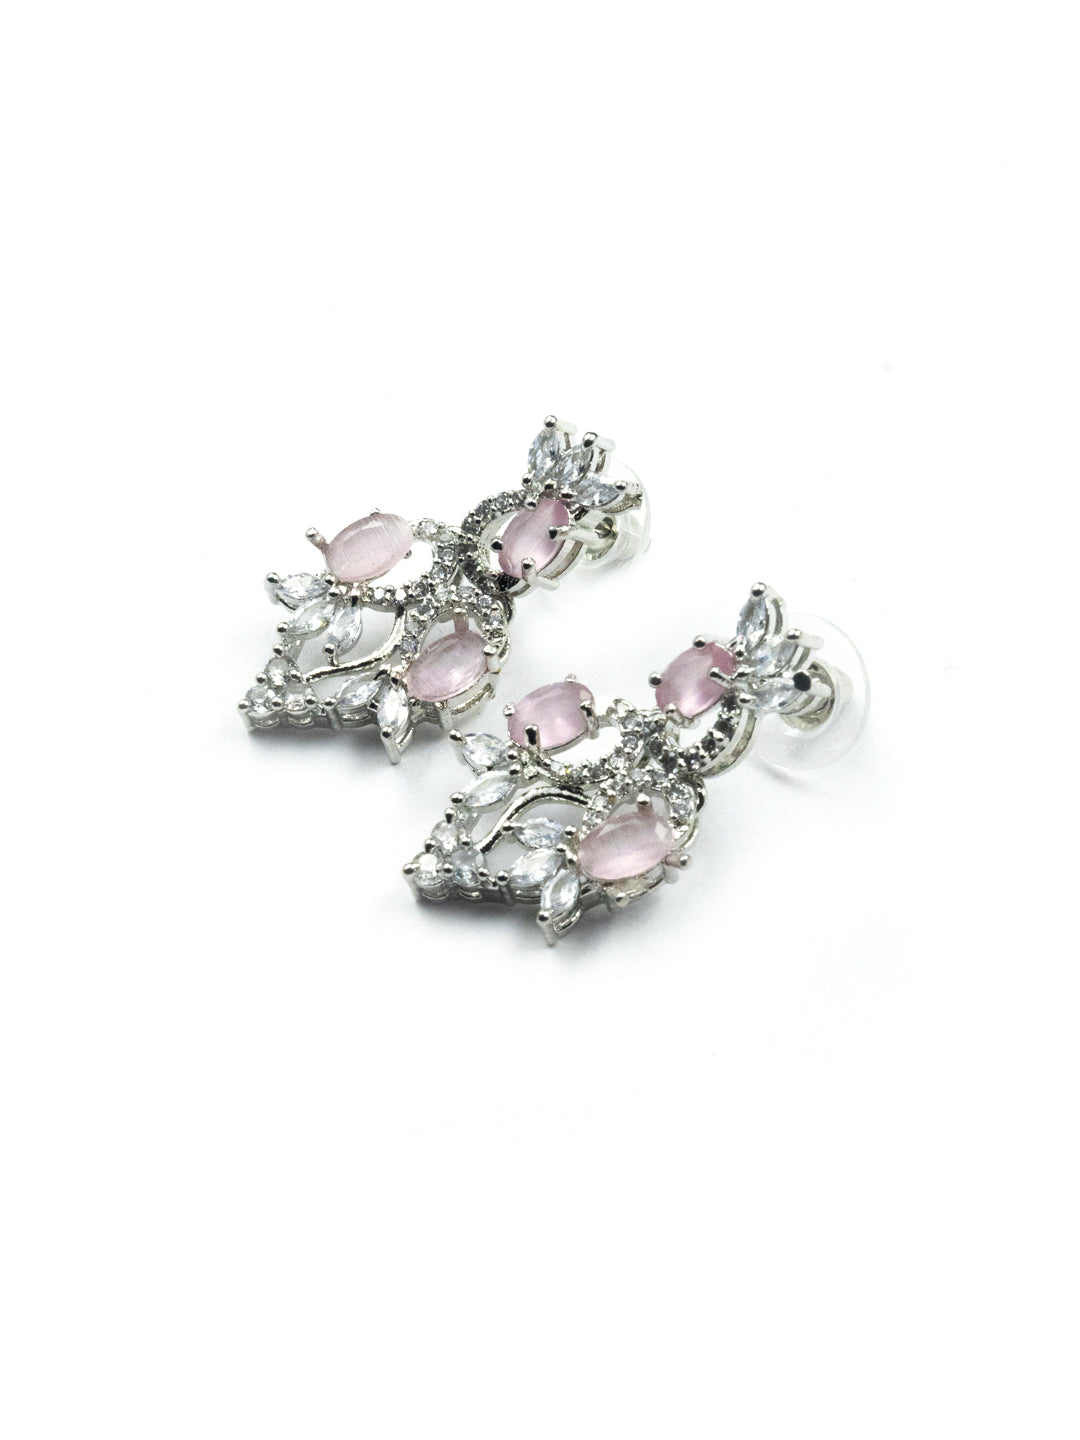 Women's Graceful American Diamond Necklace Set with Earrings - StileAdda